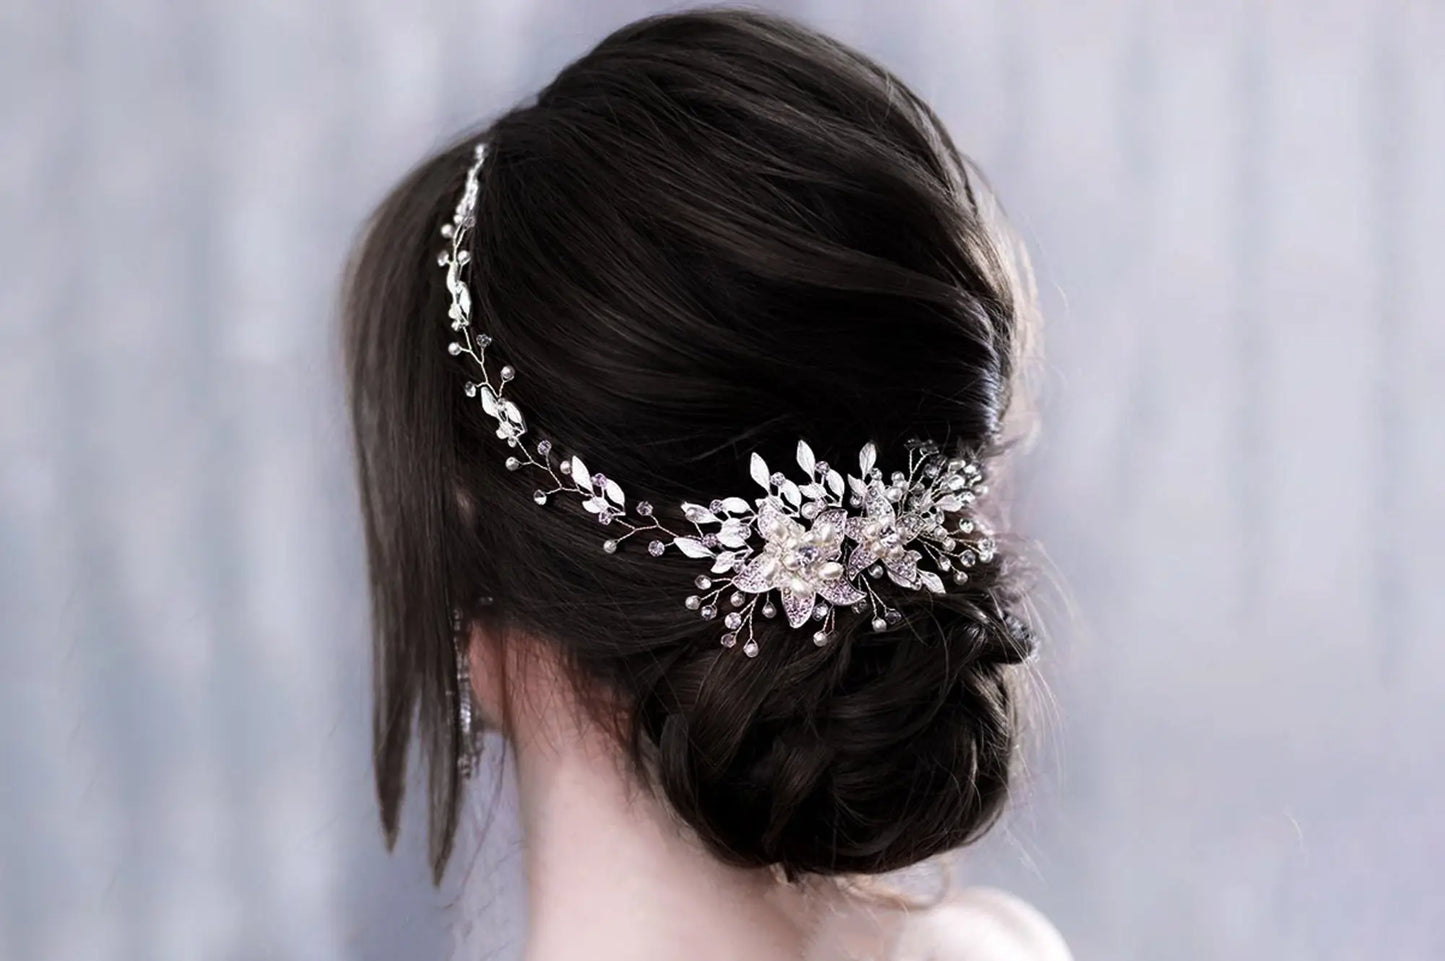 Floral Hair Comb, Flower Hair Comb Bridal Headpiece, Hair Accessories For Bride, Hair Piece Wedding Day, Floral Hair Piece, Pearl Hair Comb Kebble Jewelry